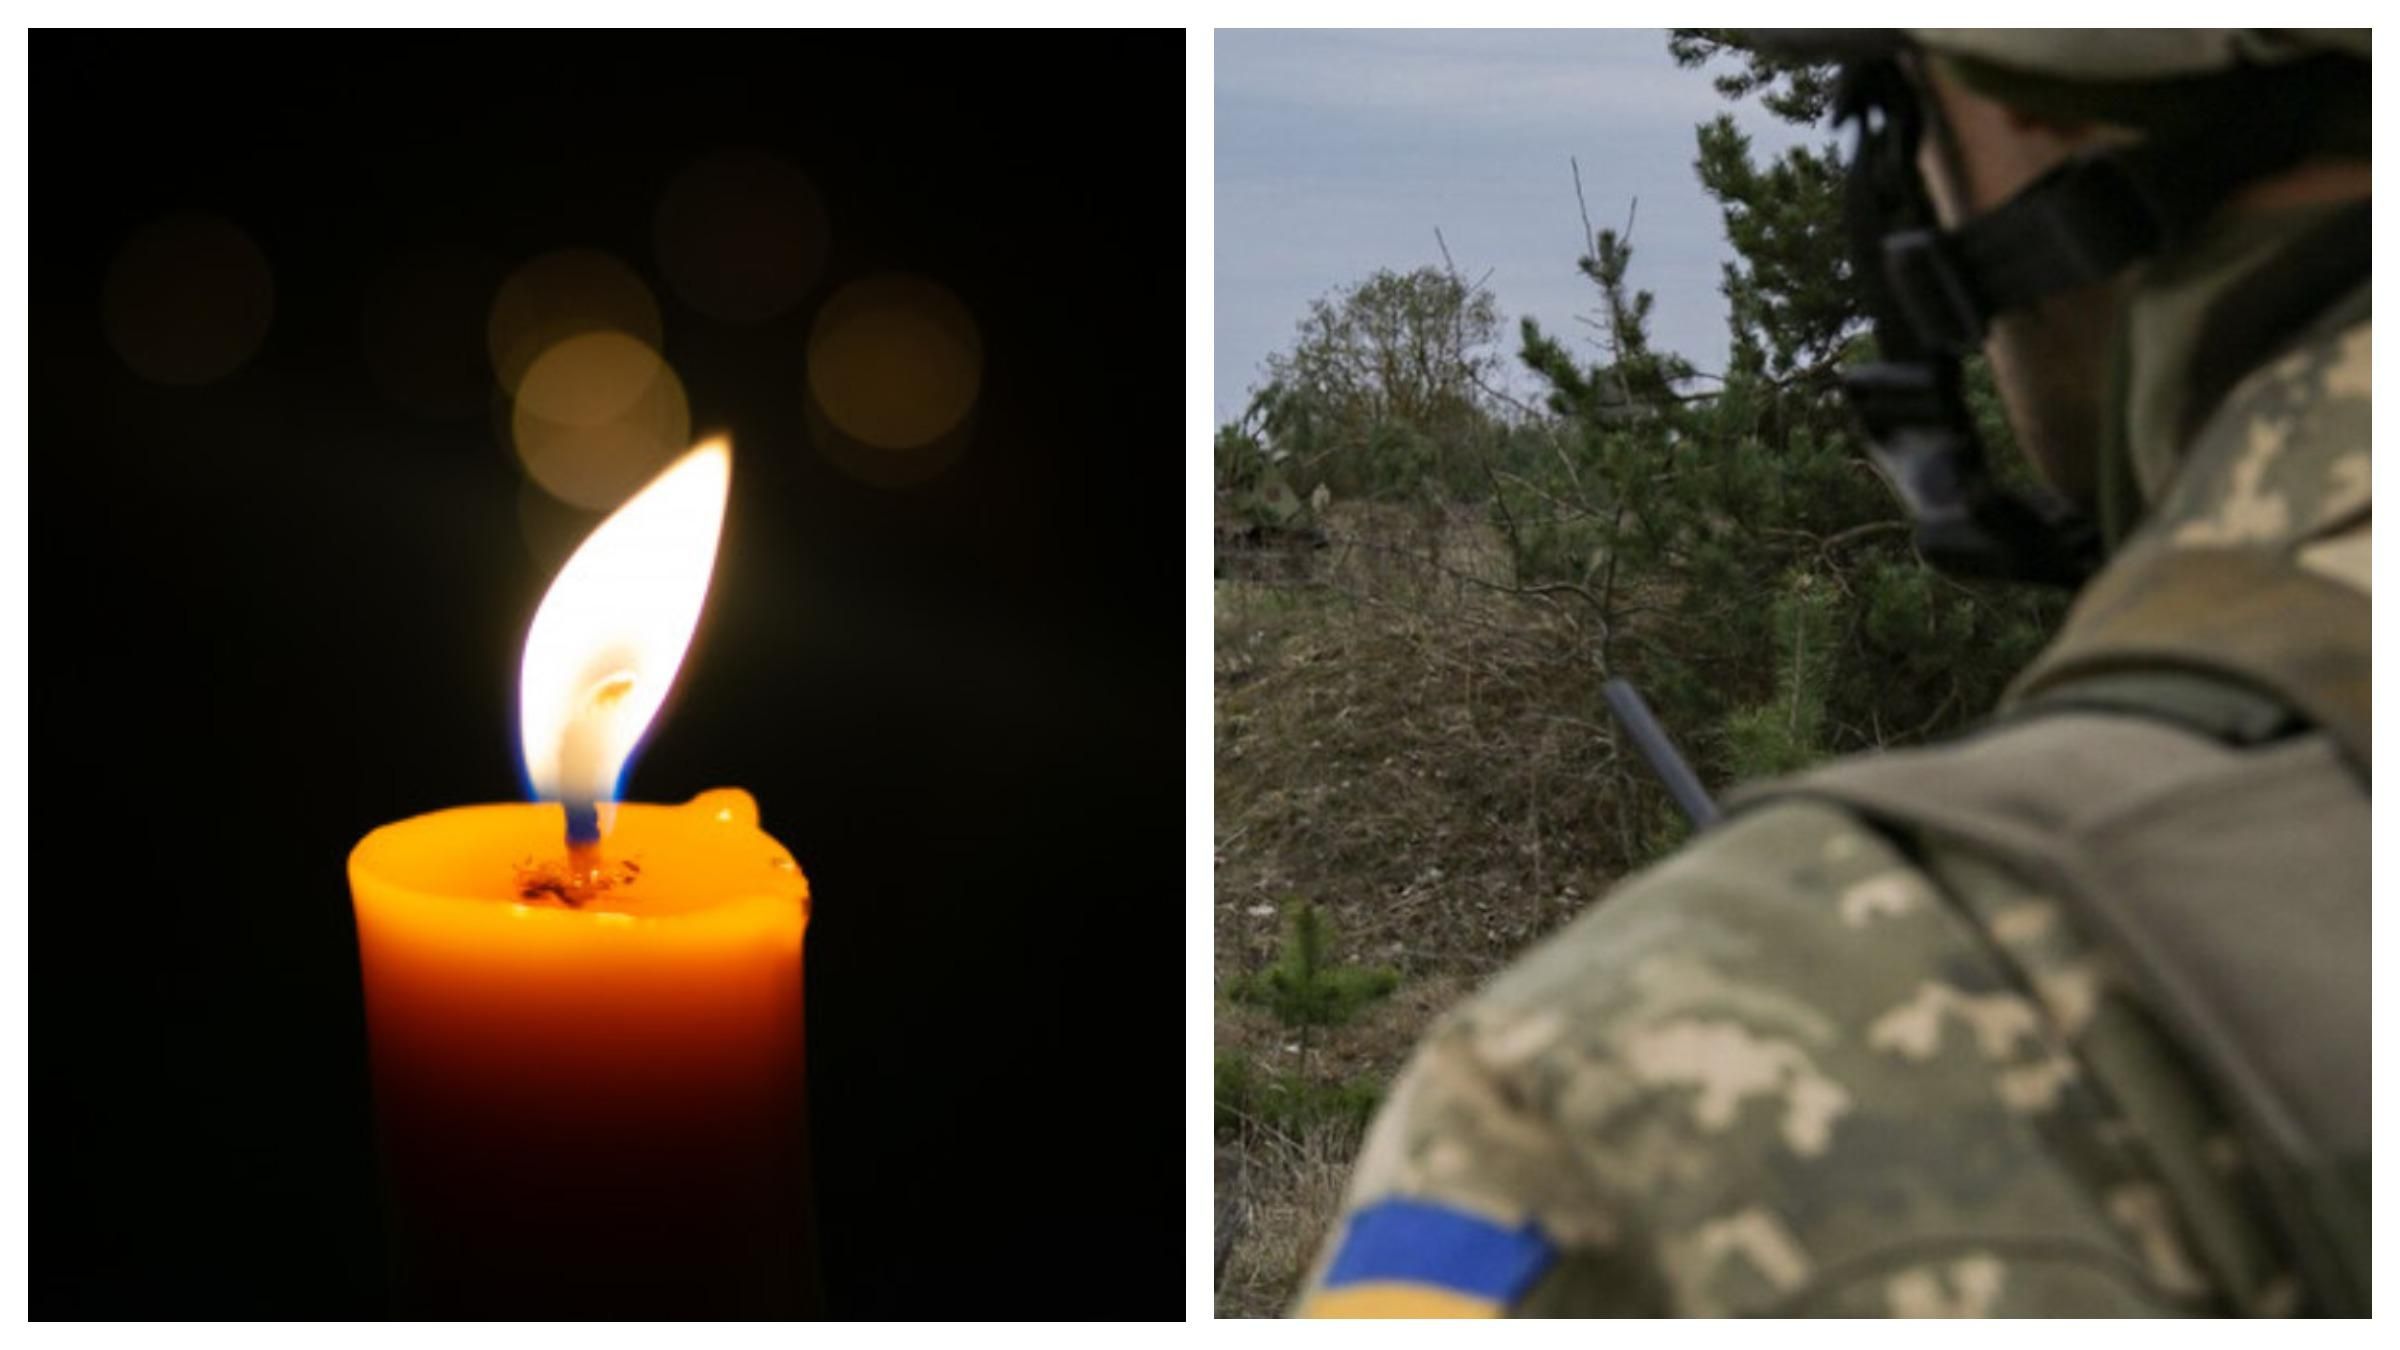 На Донбасі бойовики вбили українського військового